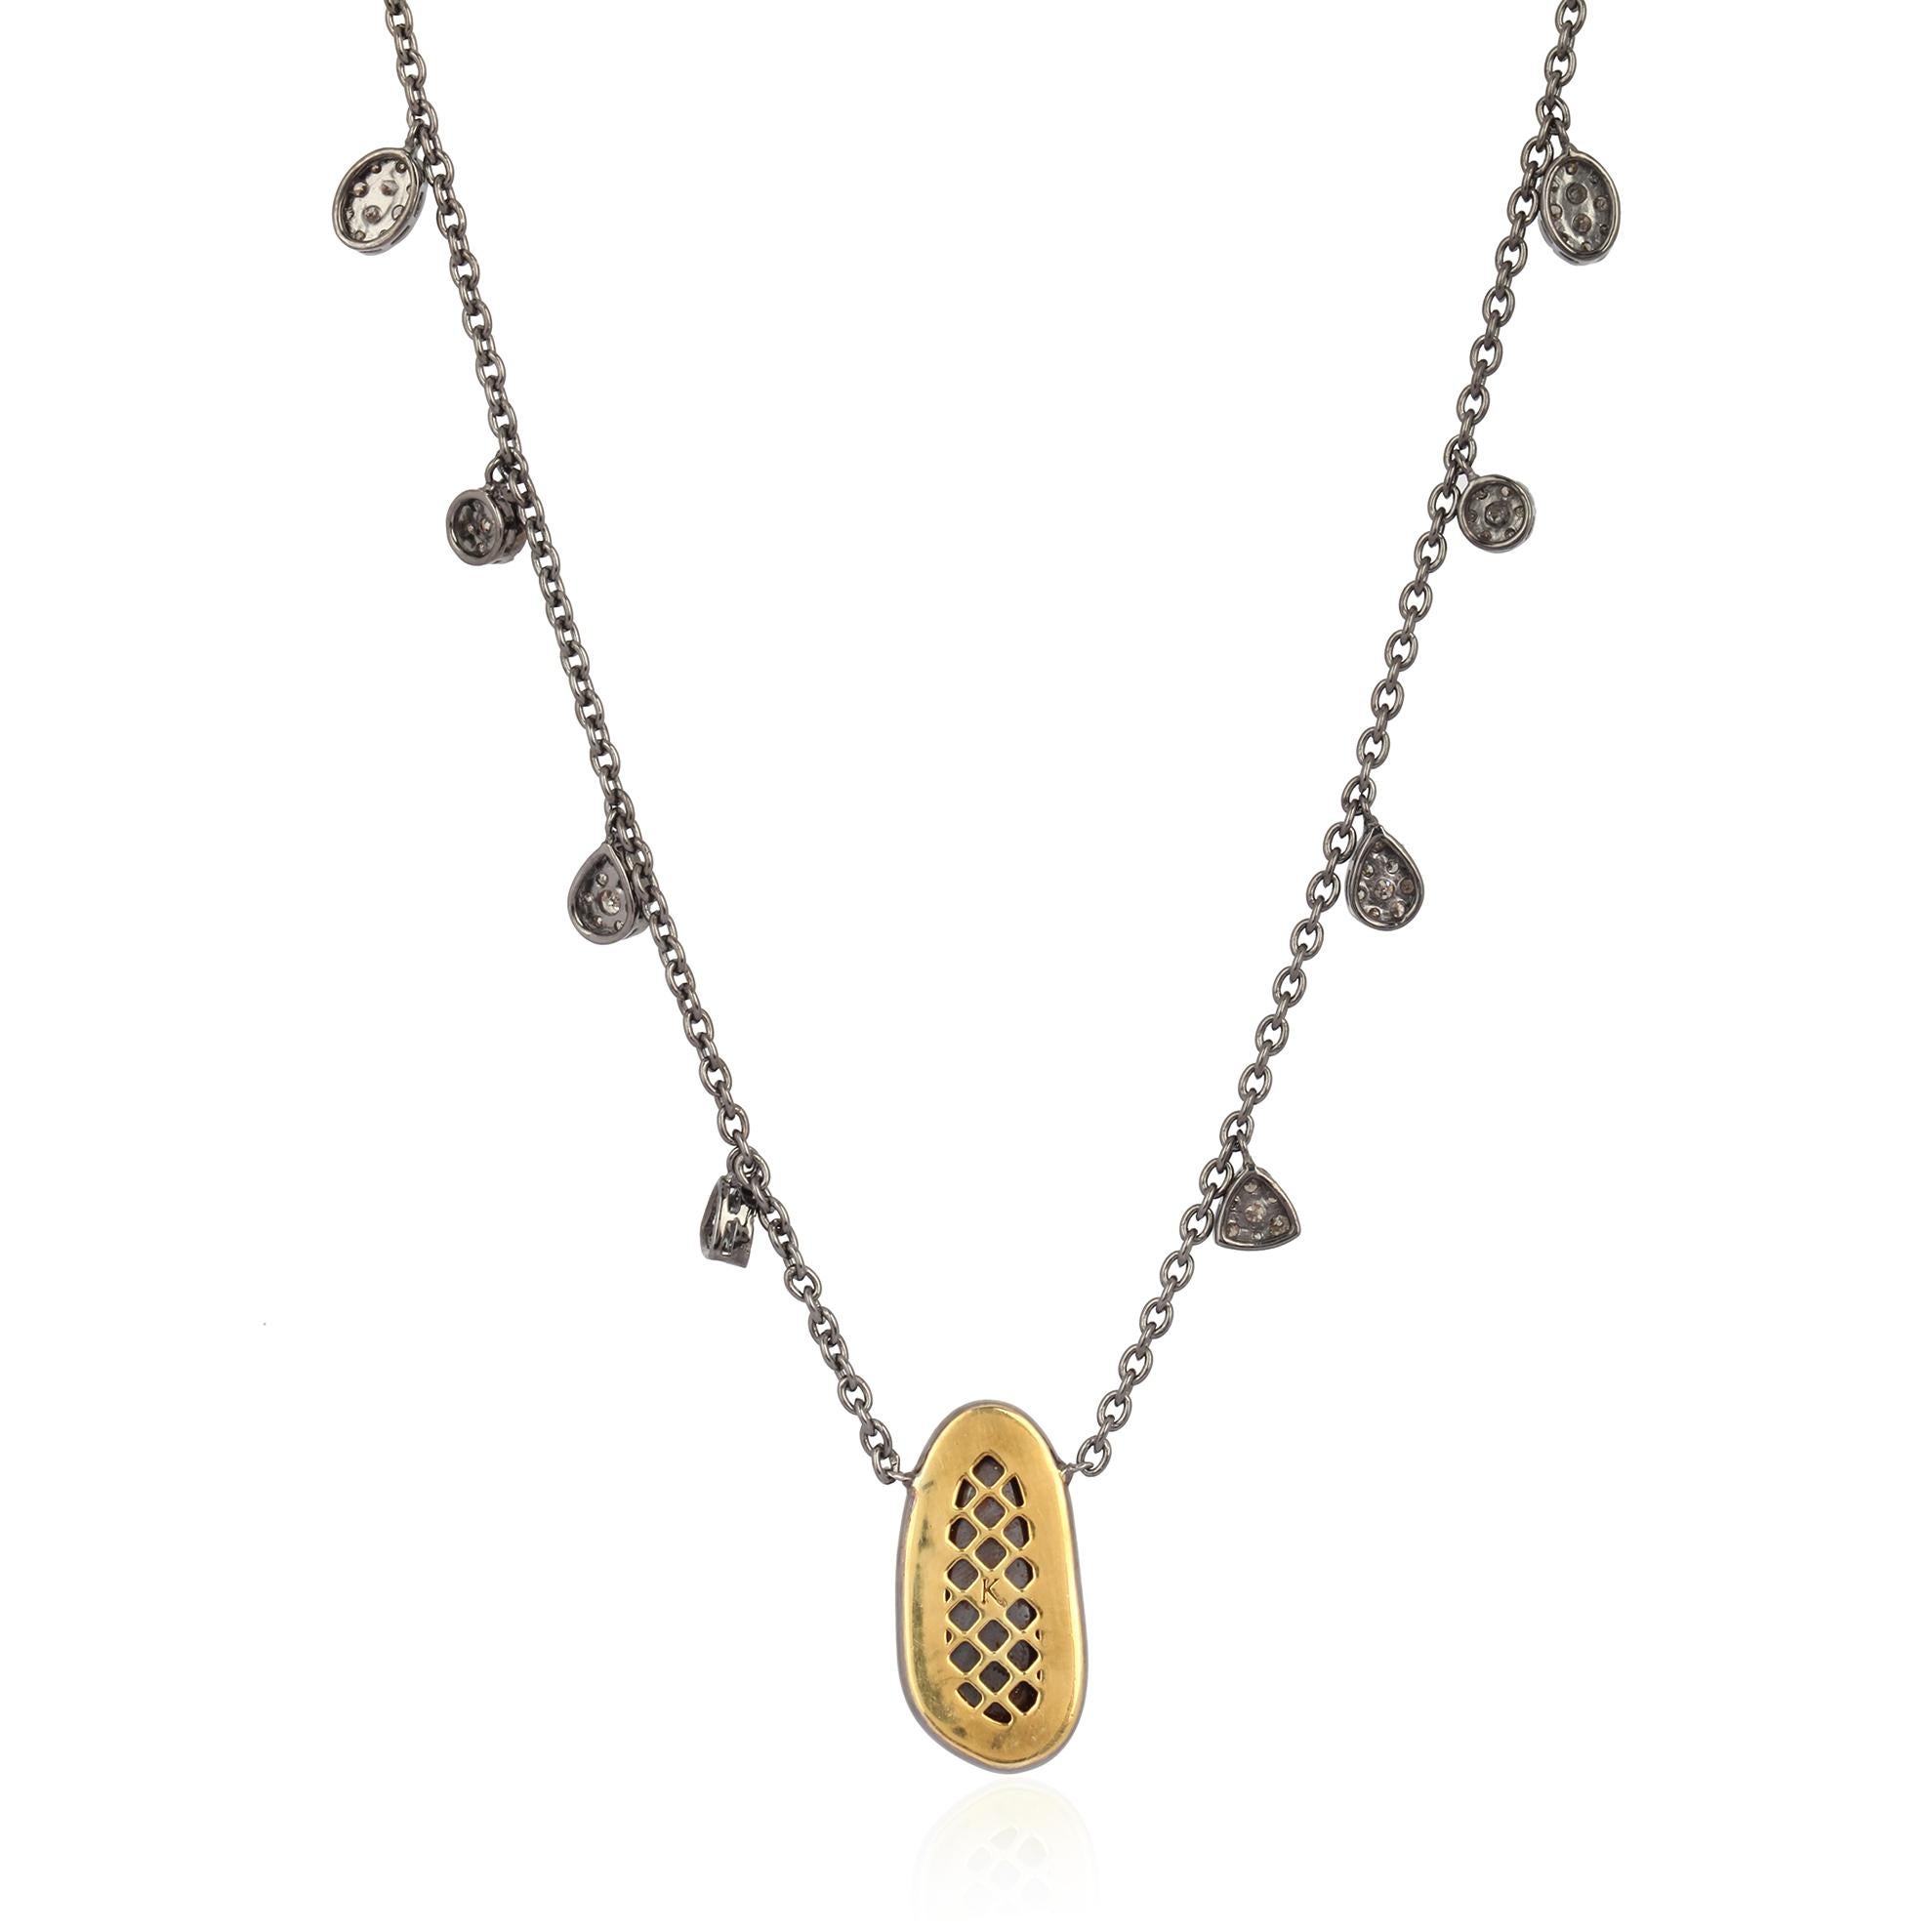 Diese Halskette ist aus 18-karätigem Gold und Sterlingsilber gefertigt. Er ist mit 3,09 Karat Opal-Doubletten und 1,32 Karat Diamanten besetzt. Länge der Kette: 18 Zoll.

FOLLOW  MEGHNA JEWELS Storefront, um die neueste Collection'S und exklusive